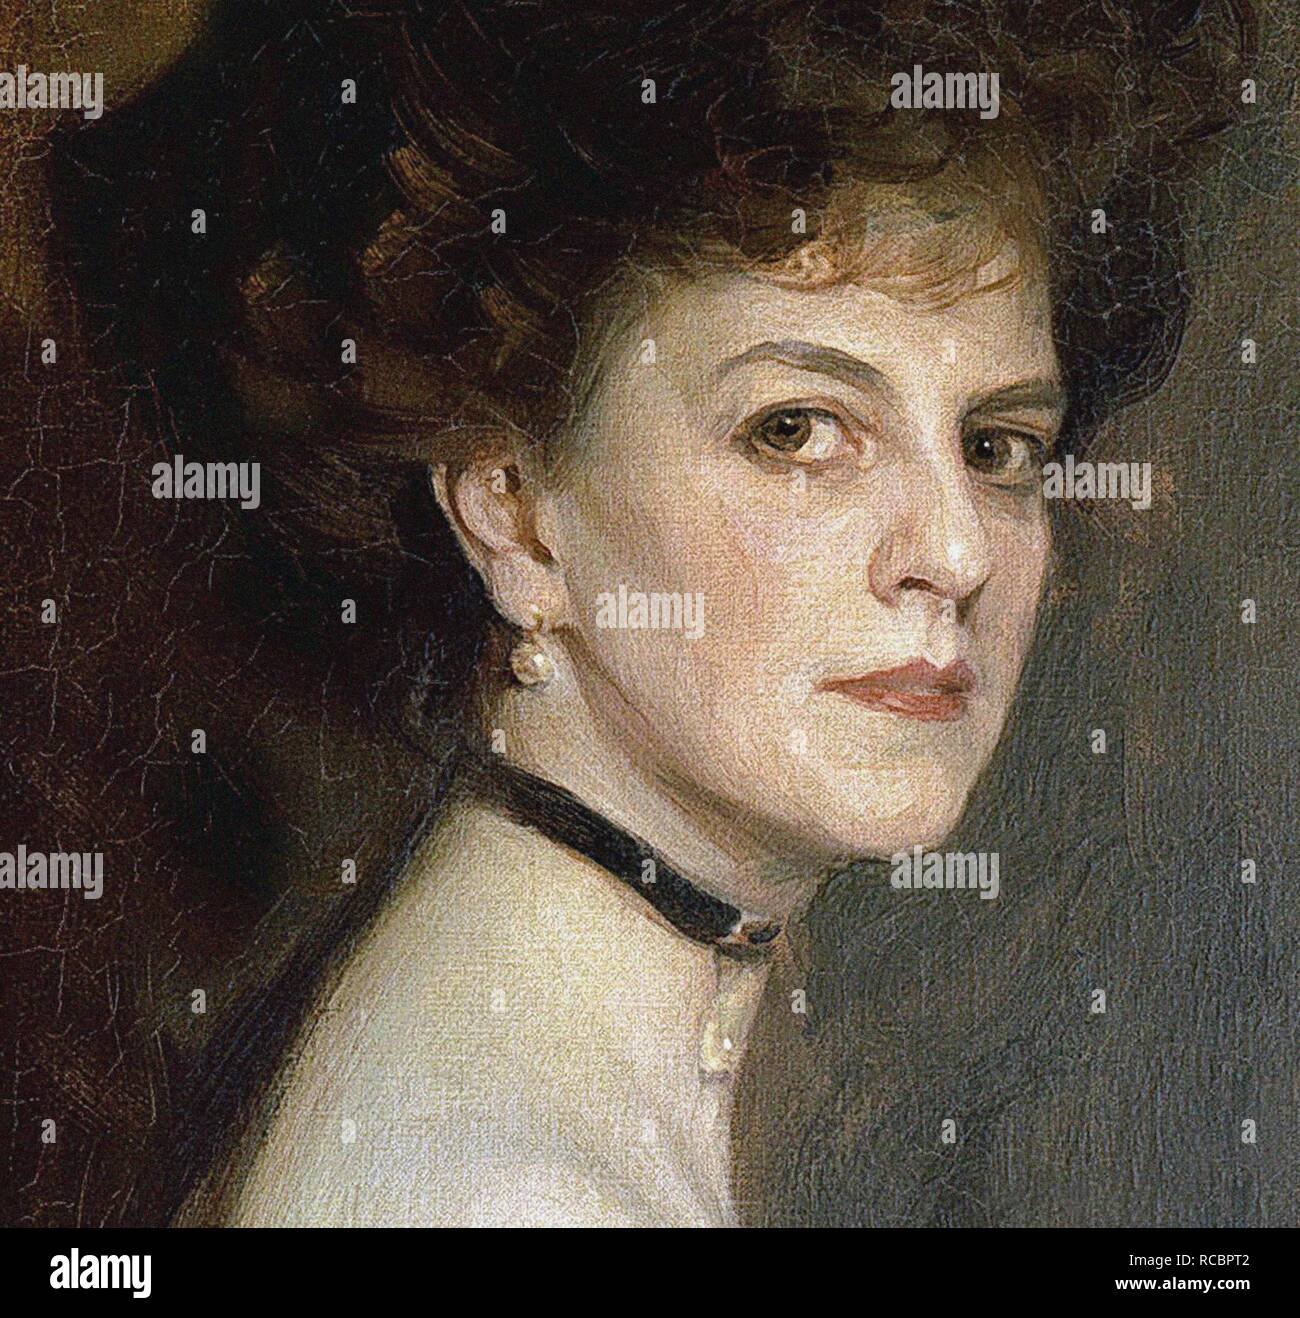 Élisabeth, Countess Greffulhe (1860-1952), née de Riquet de Caraman-Chimay (Detail). Museum: PRIVATE COLLECTION. Author: LASZLO, PHILIP DE. Stock Photo